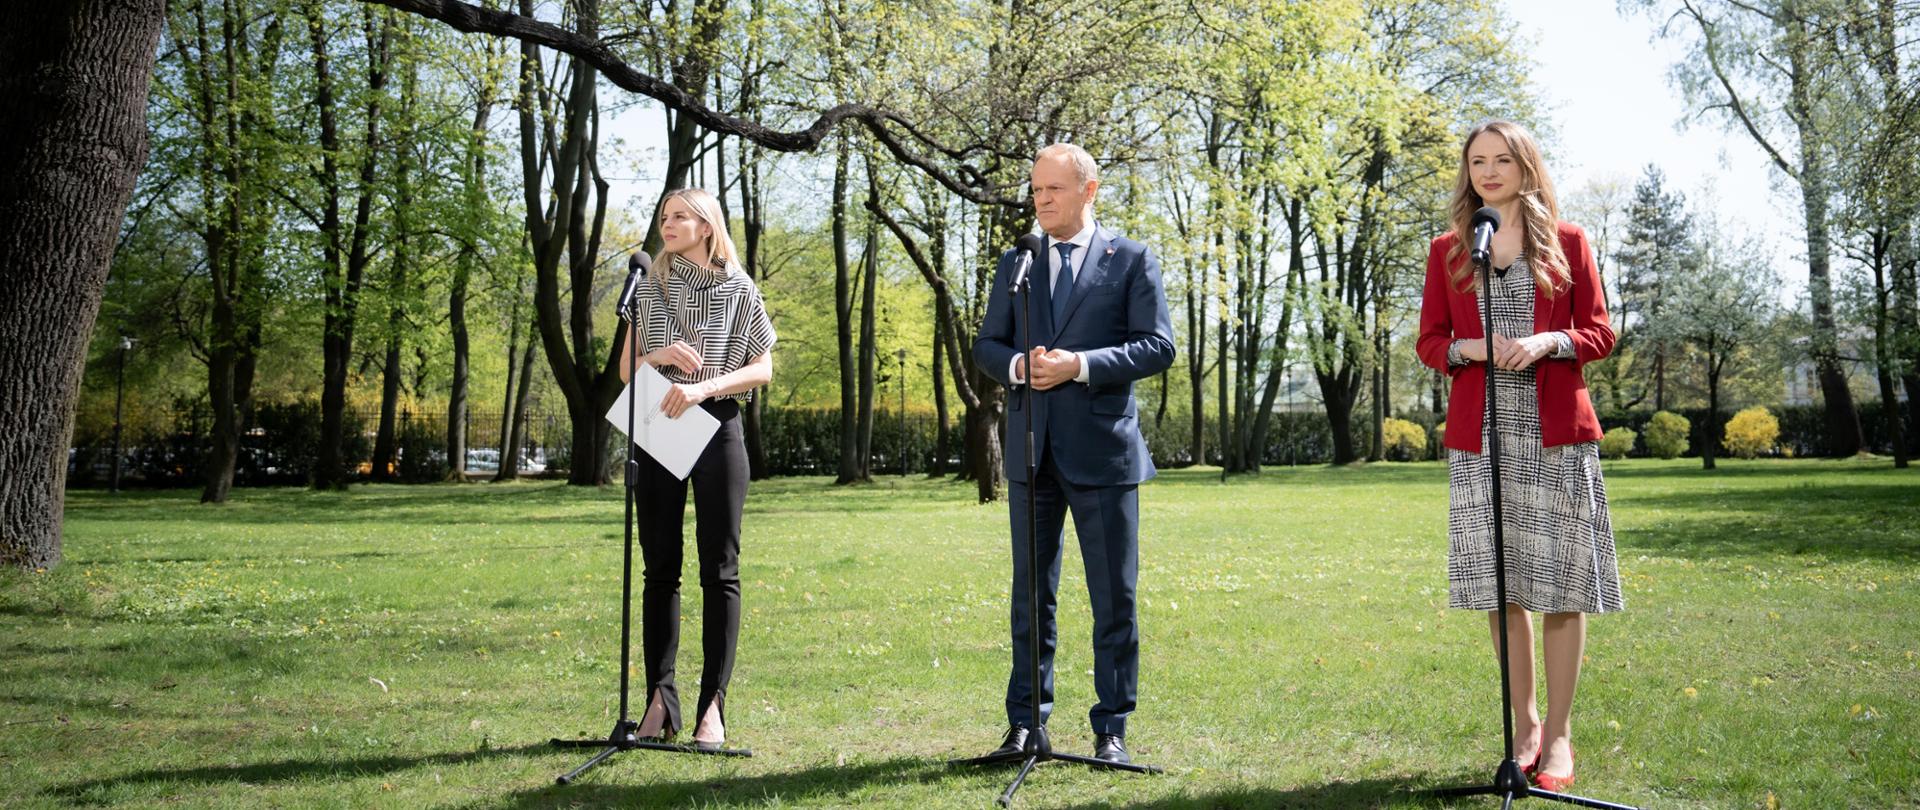 Zdjęcie z konferencji prasowej, z udziałem premiera Tuska, ministry Dziemianowicz-Bąk oraz wiceministry Gajewskiej, w ogrodach KPRM 